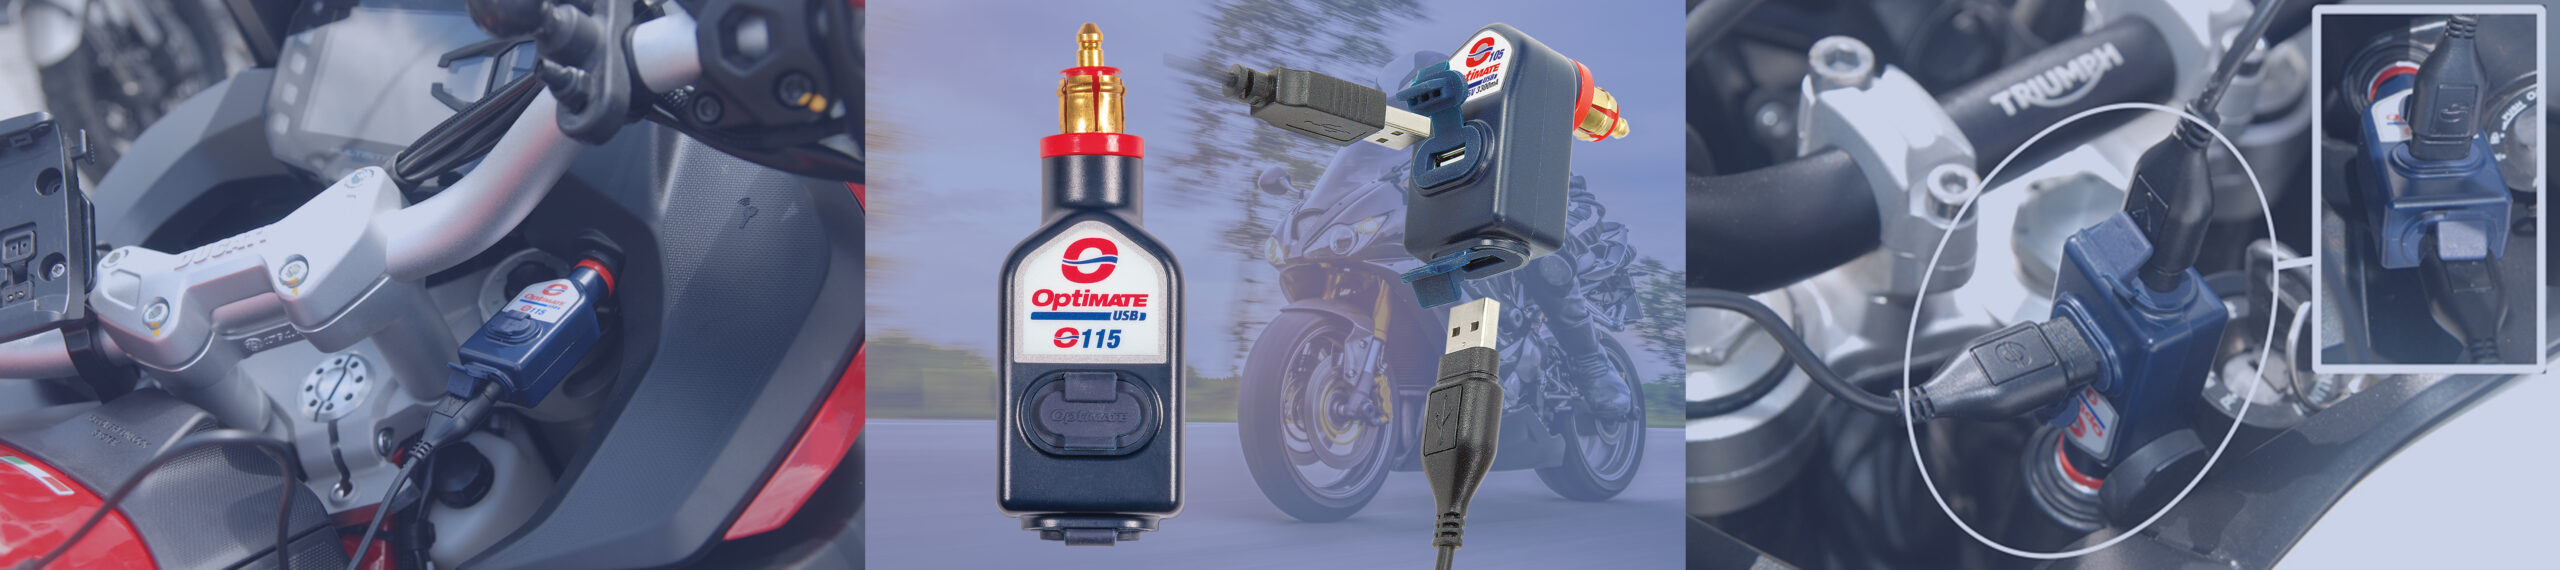 Cargadores USB O-115 y O-105 OptiMate enchufados a enchufes de motocicleta